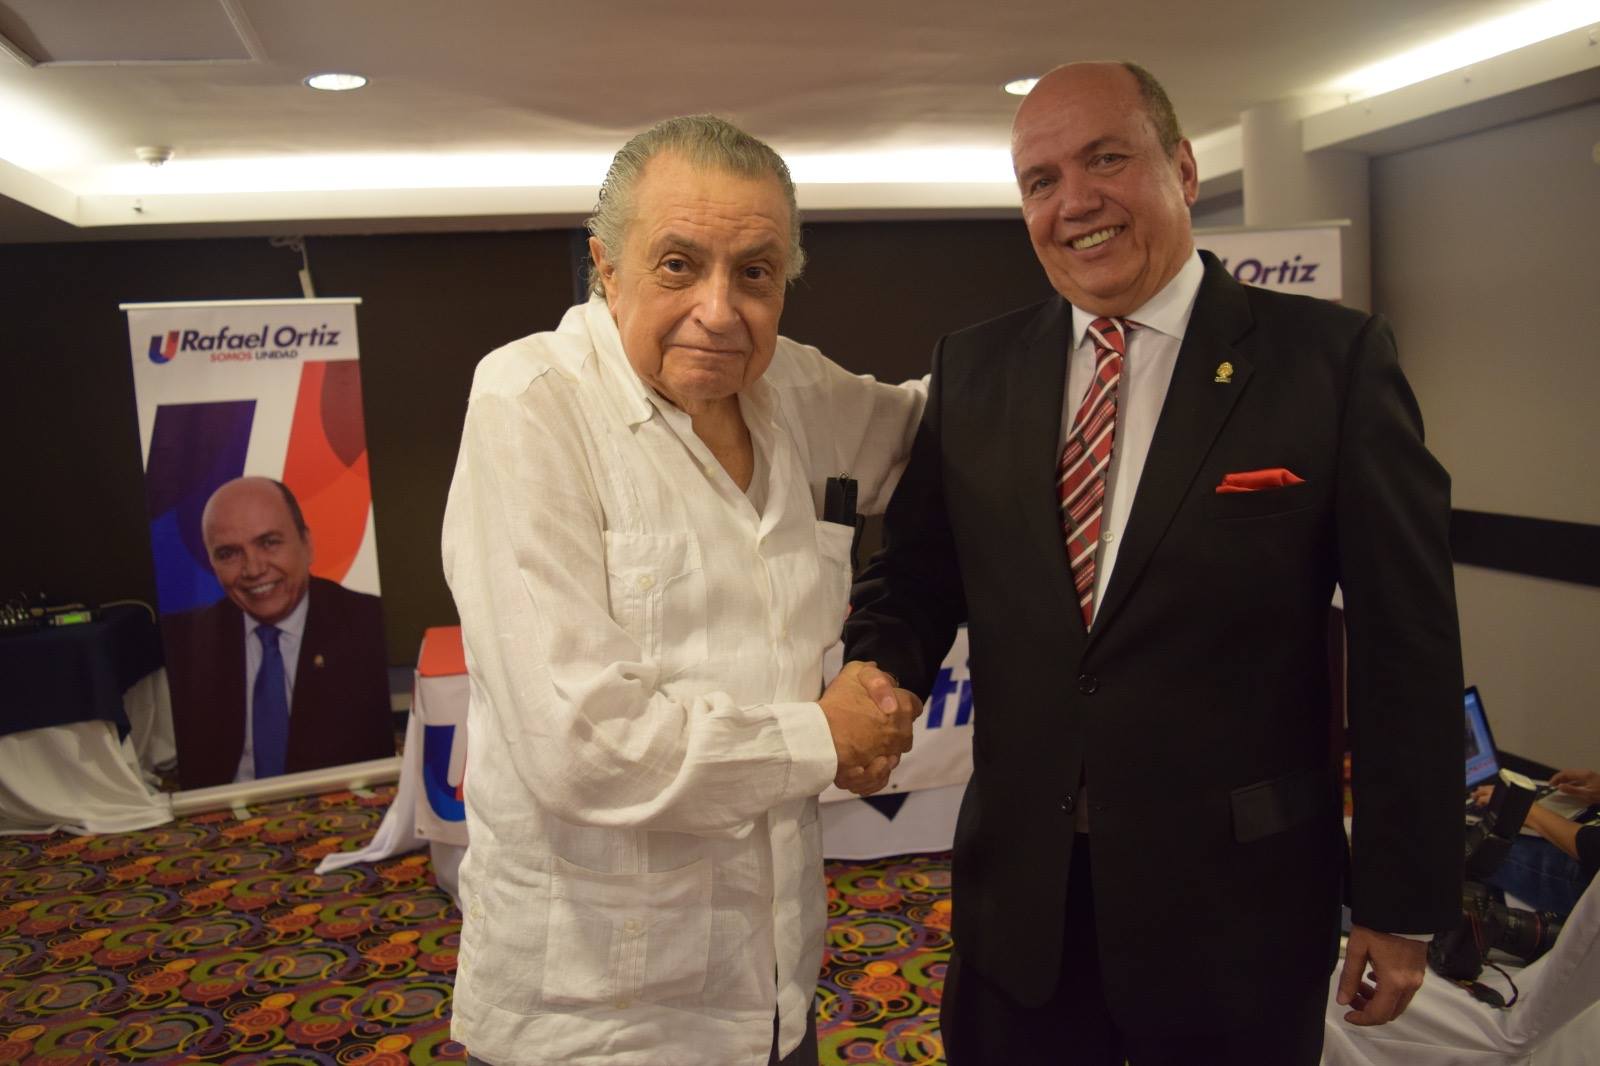 Expresidente Abel Pacheco da apoyo a Rafael Ortiz en precandidatura por el PUSC